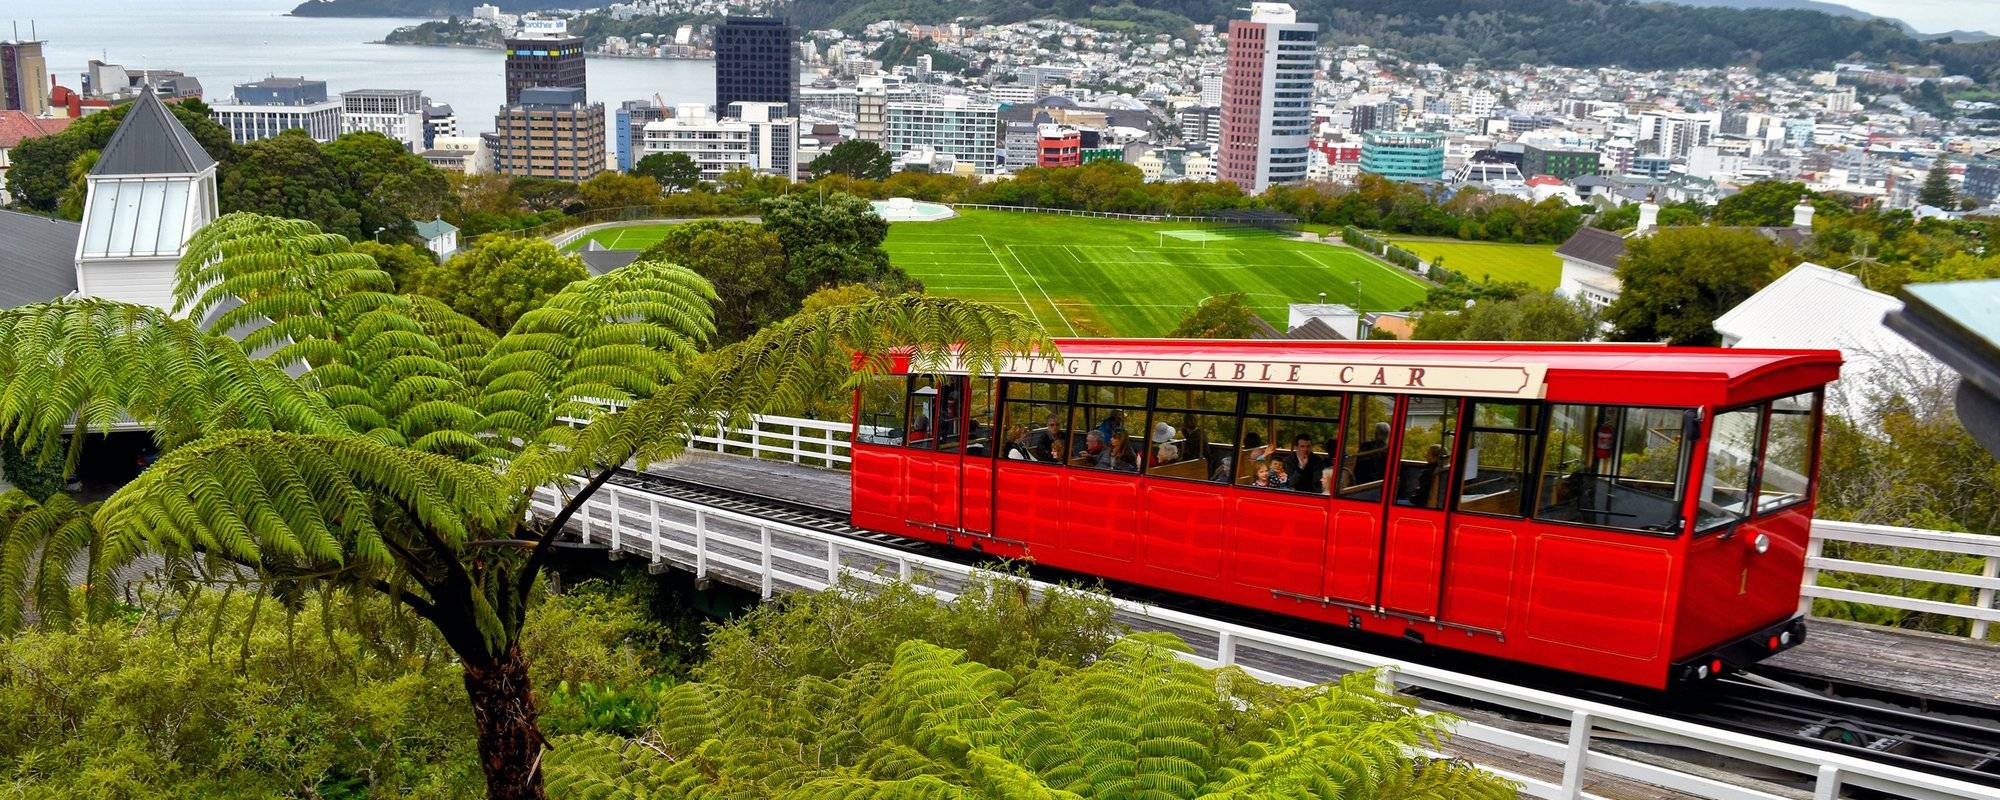 Wellington cable car  威灵顿登山缆车